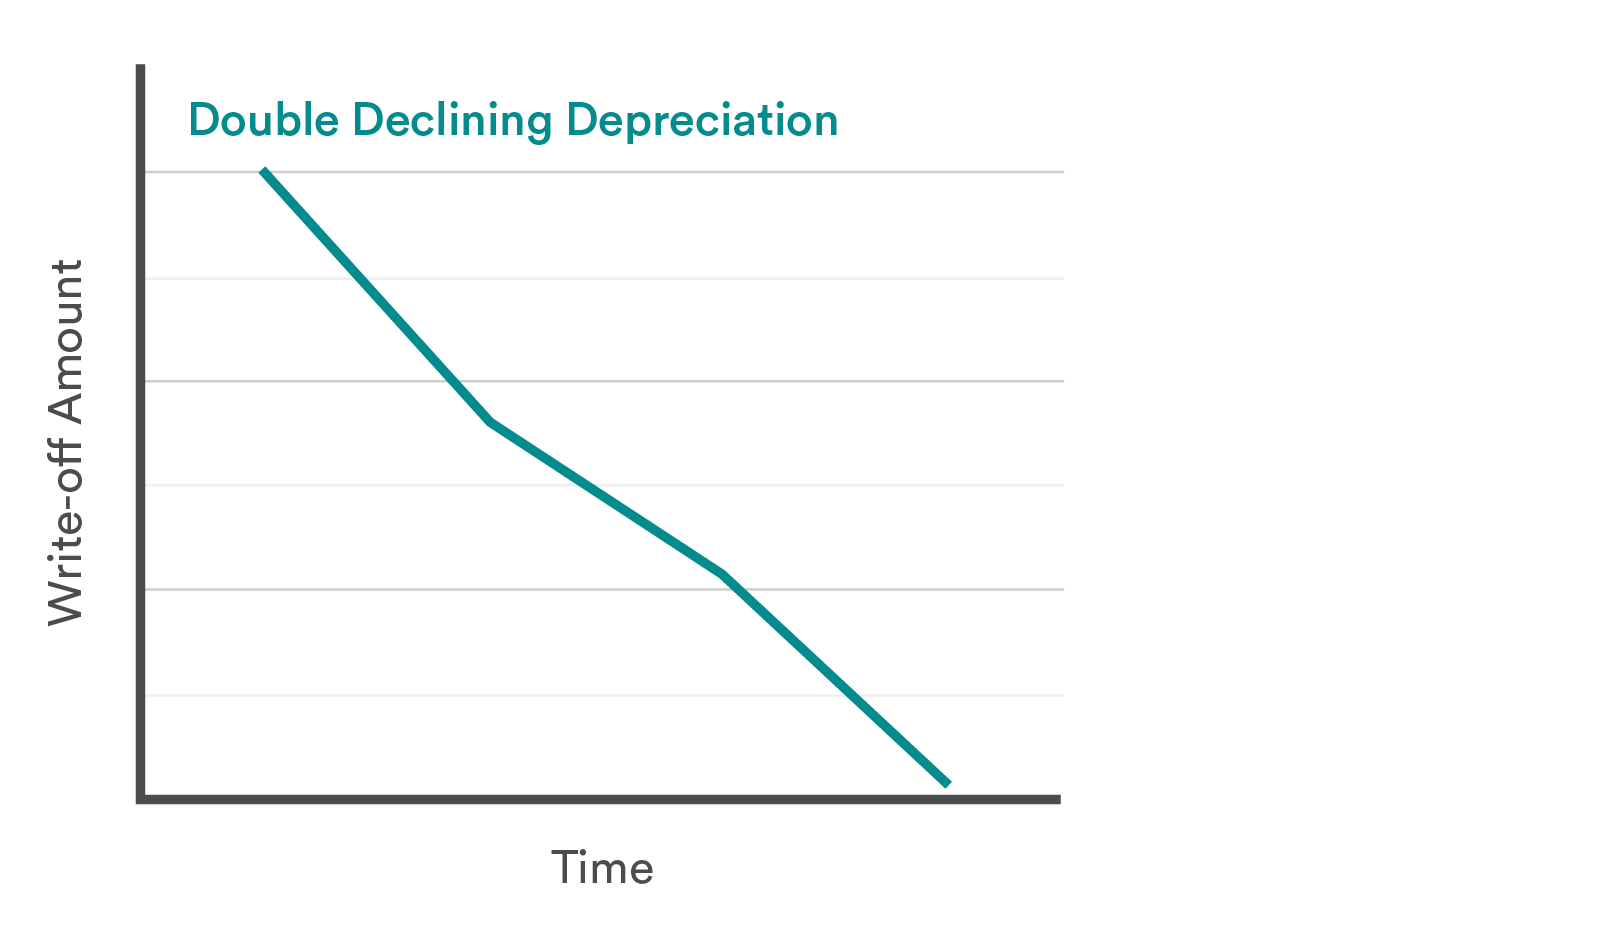 Double declining depreciation